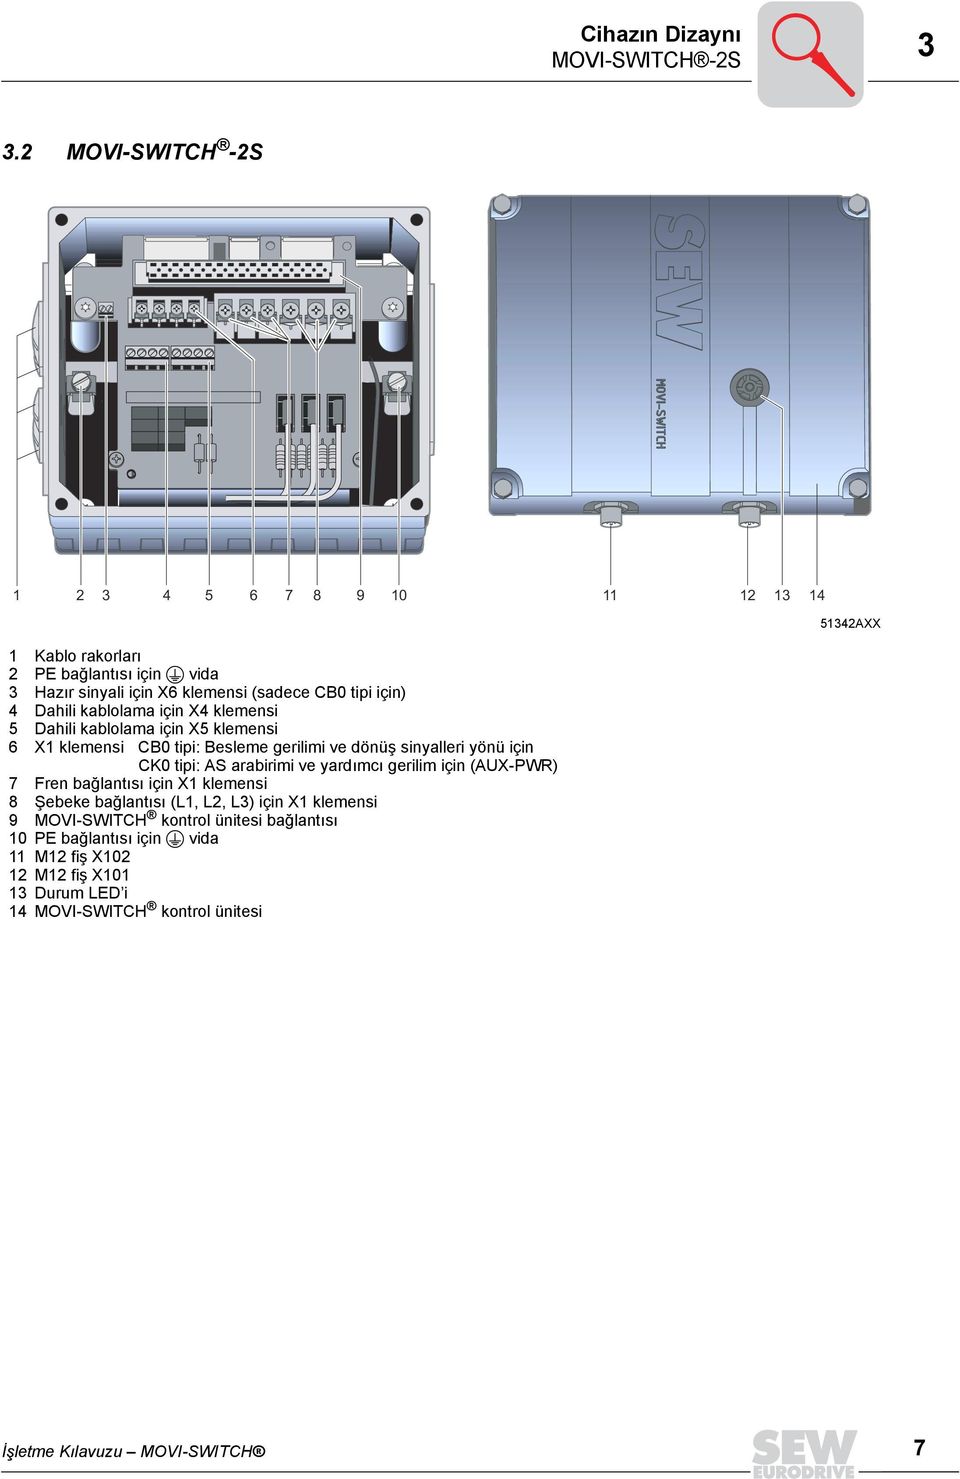 kablolama için X4 klemensi 5 Dahili kablolama için X5 klemensi 6 X1 klemensi CB0 tipi: Besleme gerilimi ve dönüş sinyalleri yönü için CK0 tipi: AS arabirimi ve